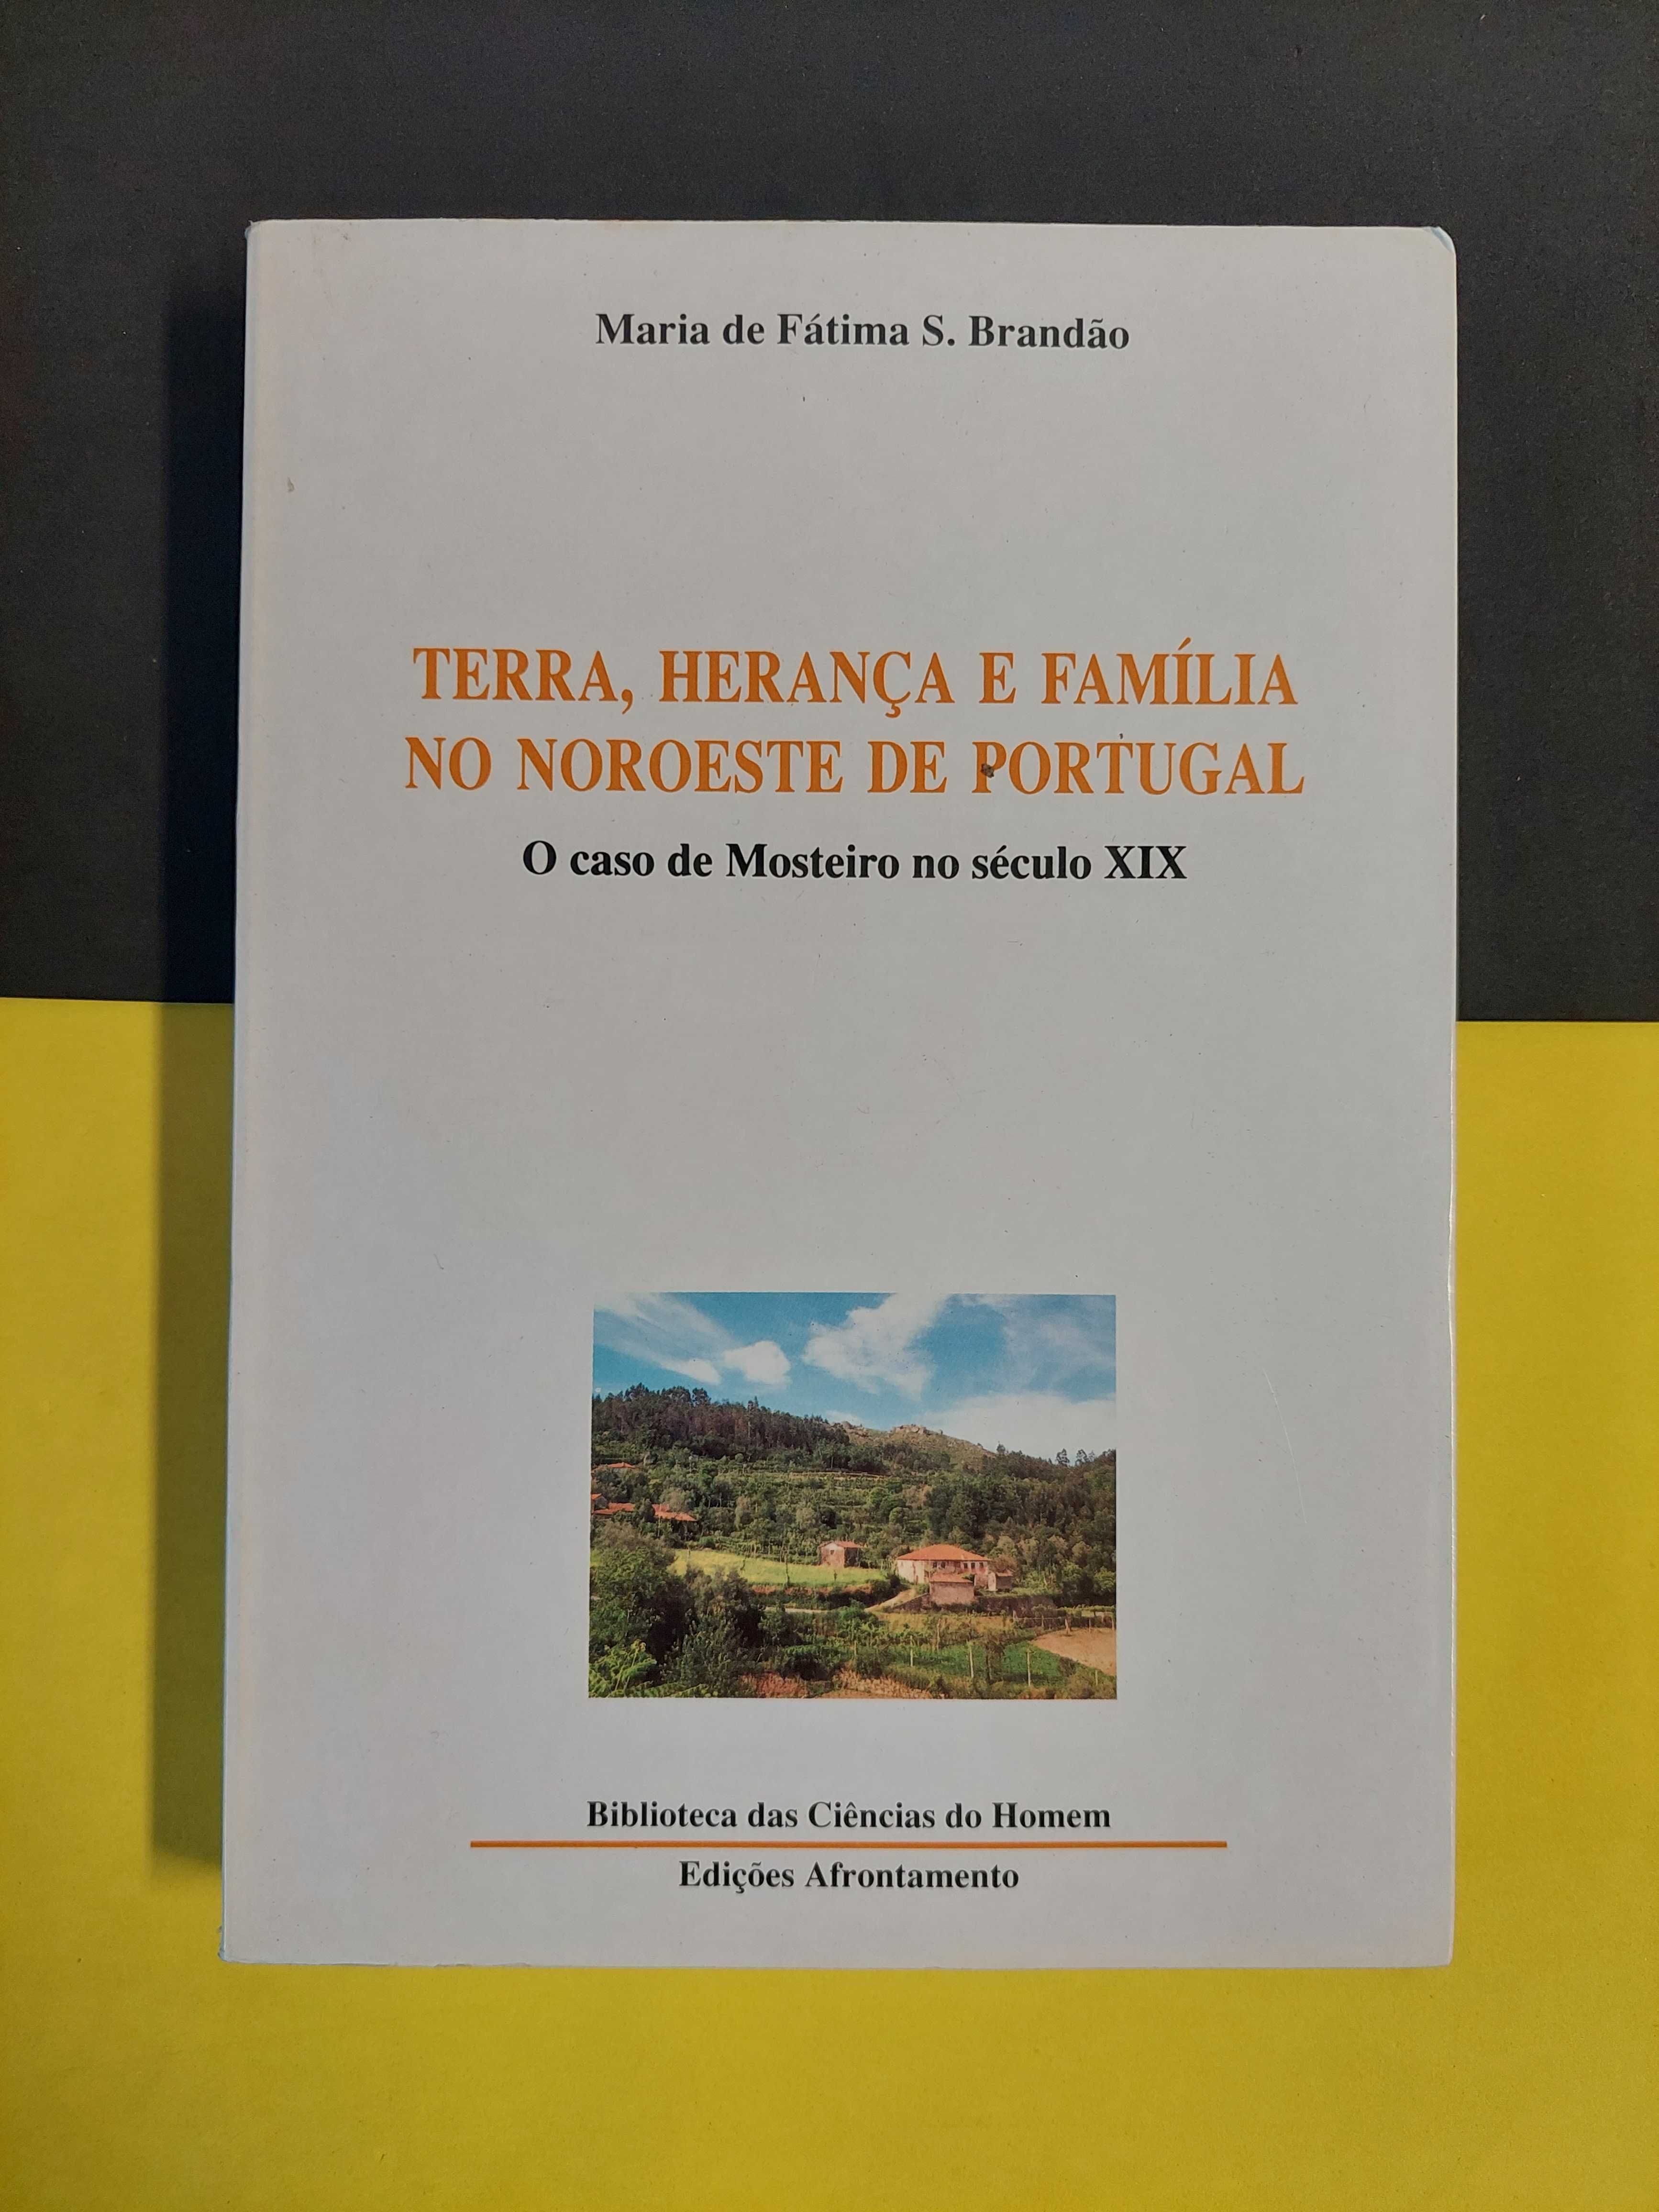 Terra, herança e família no noroeste de Portugal